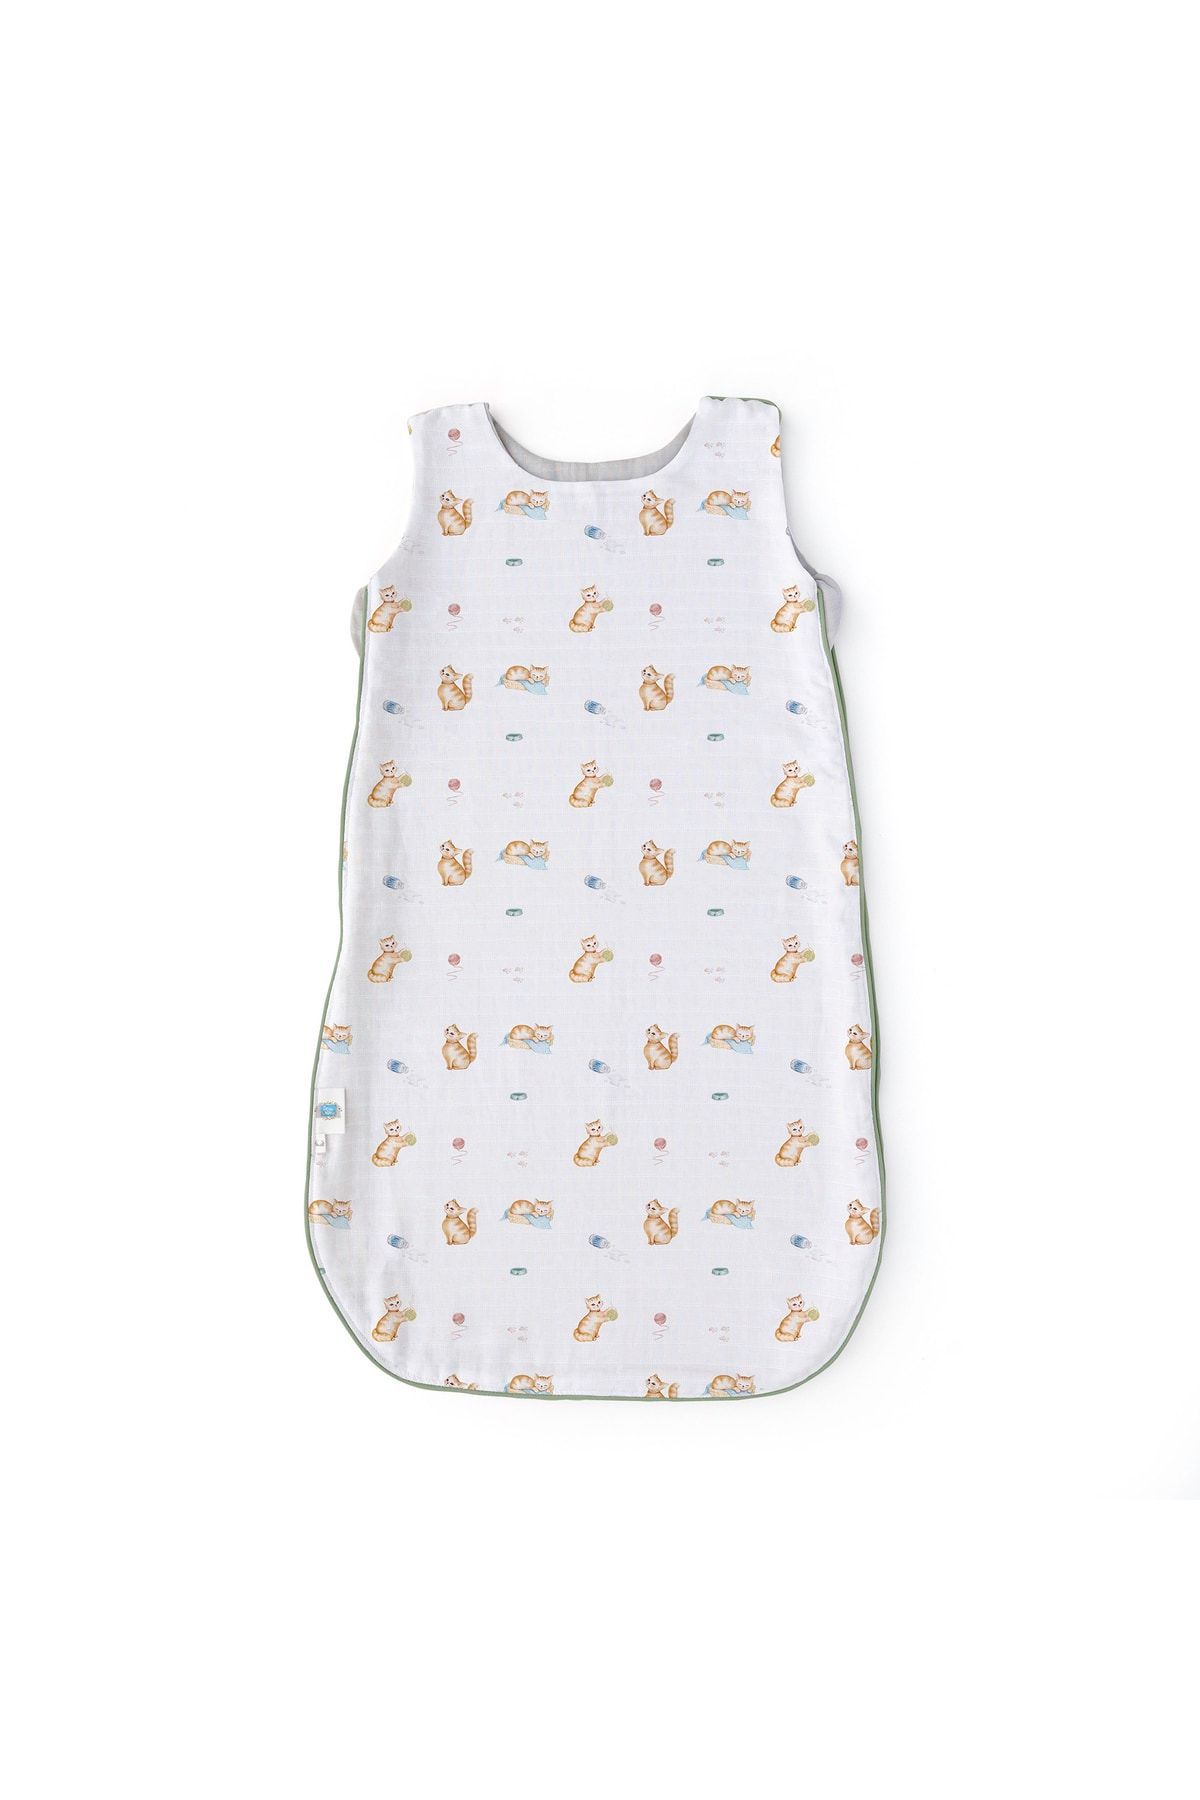 Deux Lapins Müslin Kışlık Bebek Uyku Tulumu 1.85 Tog 6-18 Ay Chaton Kışlık - Kedi Desenli